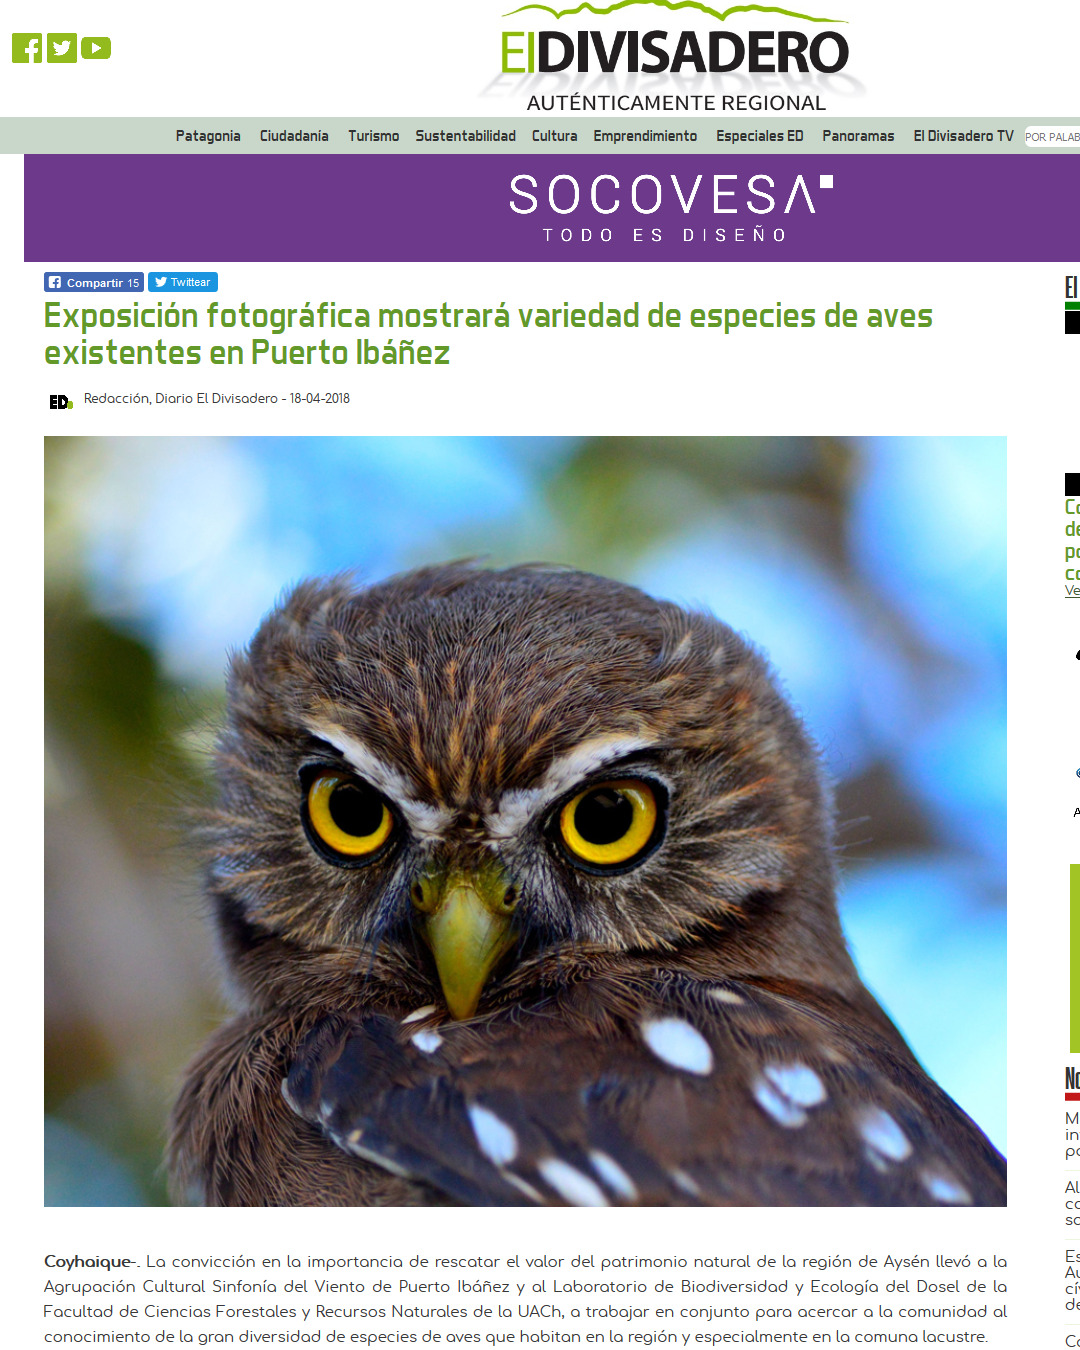 Exposición fotográfica mostrará variedad de especies de aves existentes en Puerto Ibañez